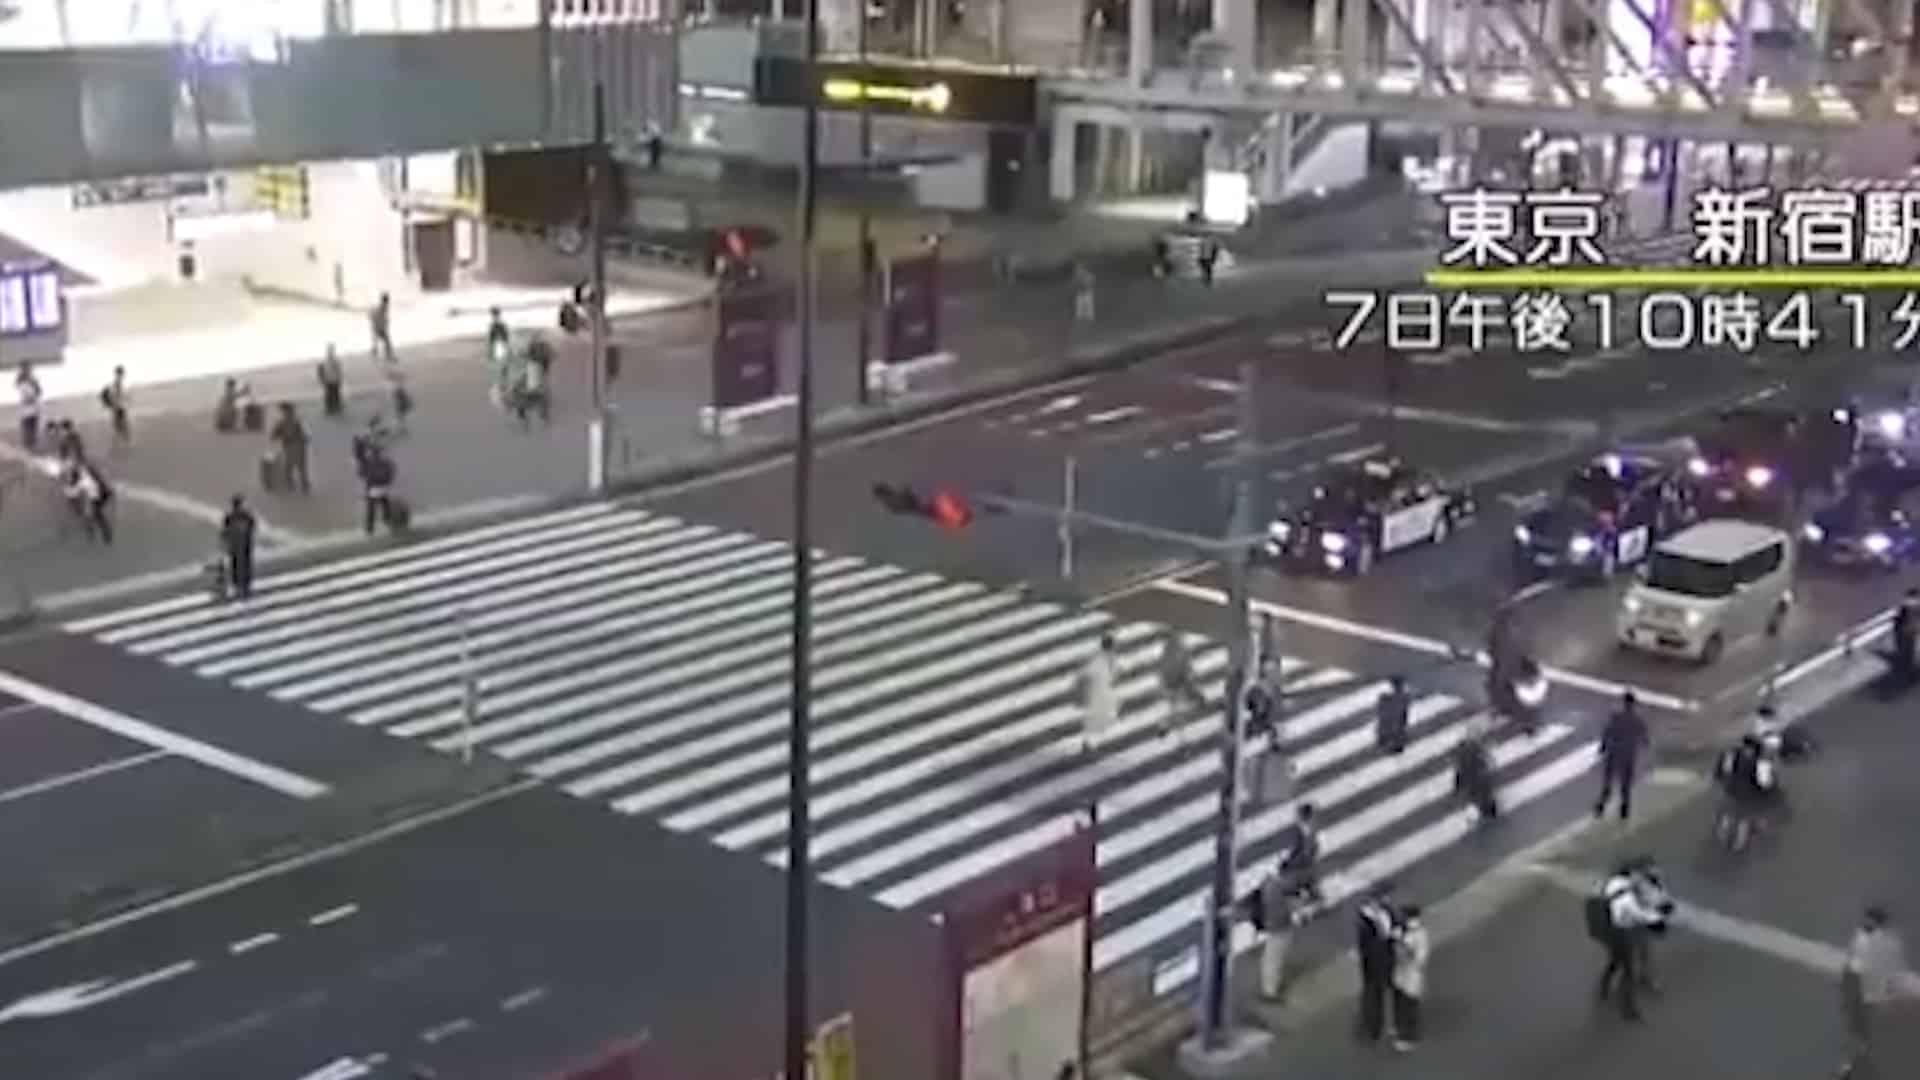 Un terremoto de magnitud 5,9 ha sacudido el centro de Tokio